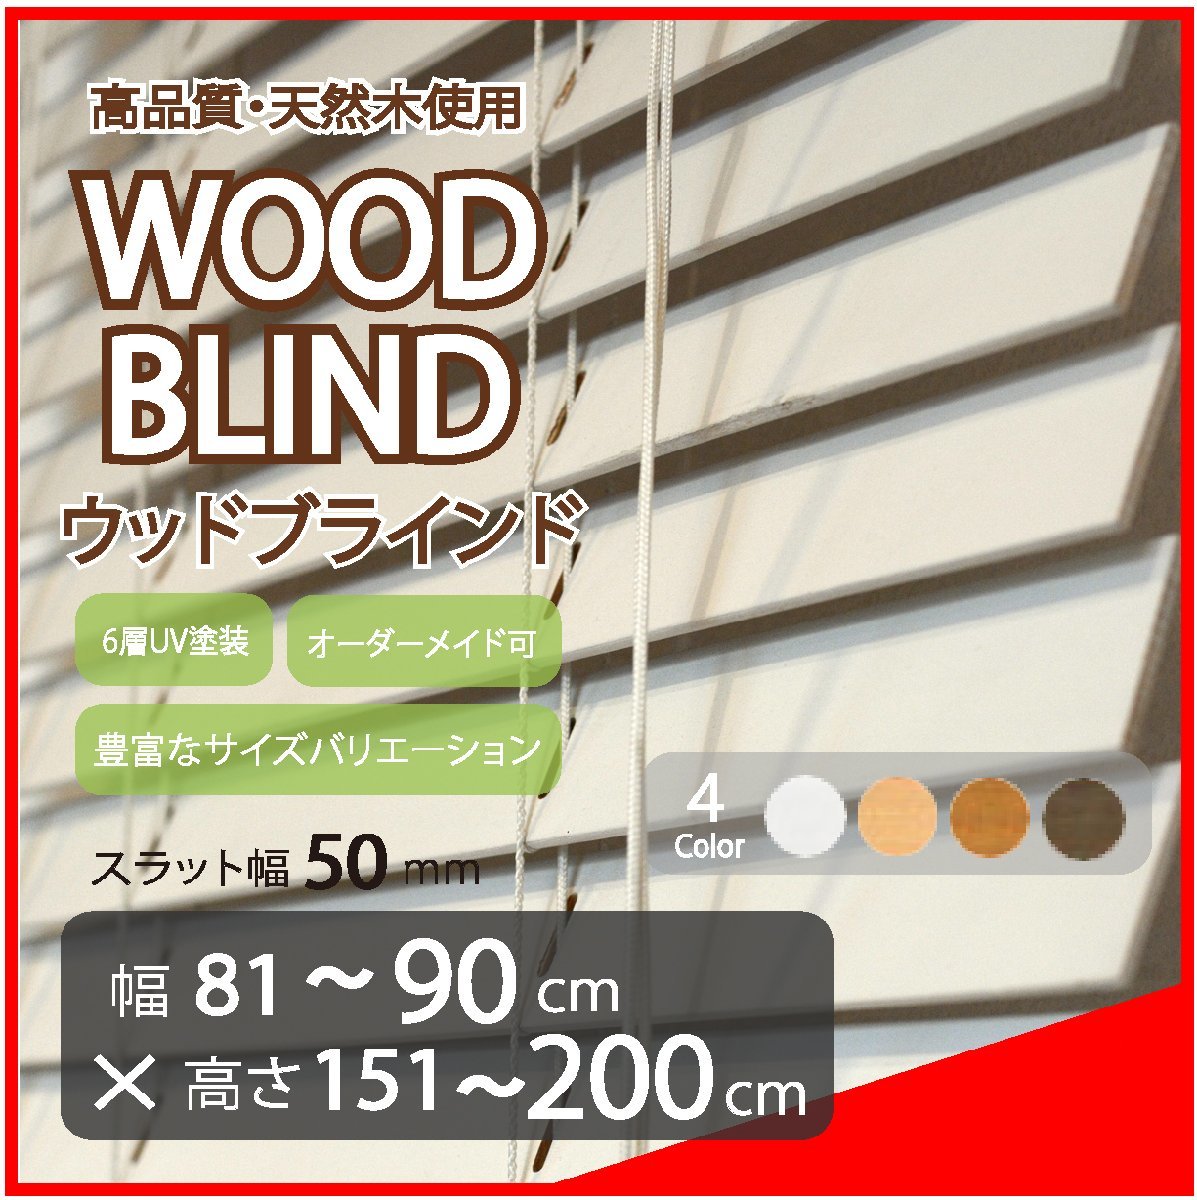 窓枠に合わせてサイズ加工が可能 高品質 木製 ウッド ブラインド オーダー可 スラット(羽根)幅50mm 幅81～90cm×高さ151～200cm